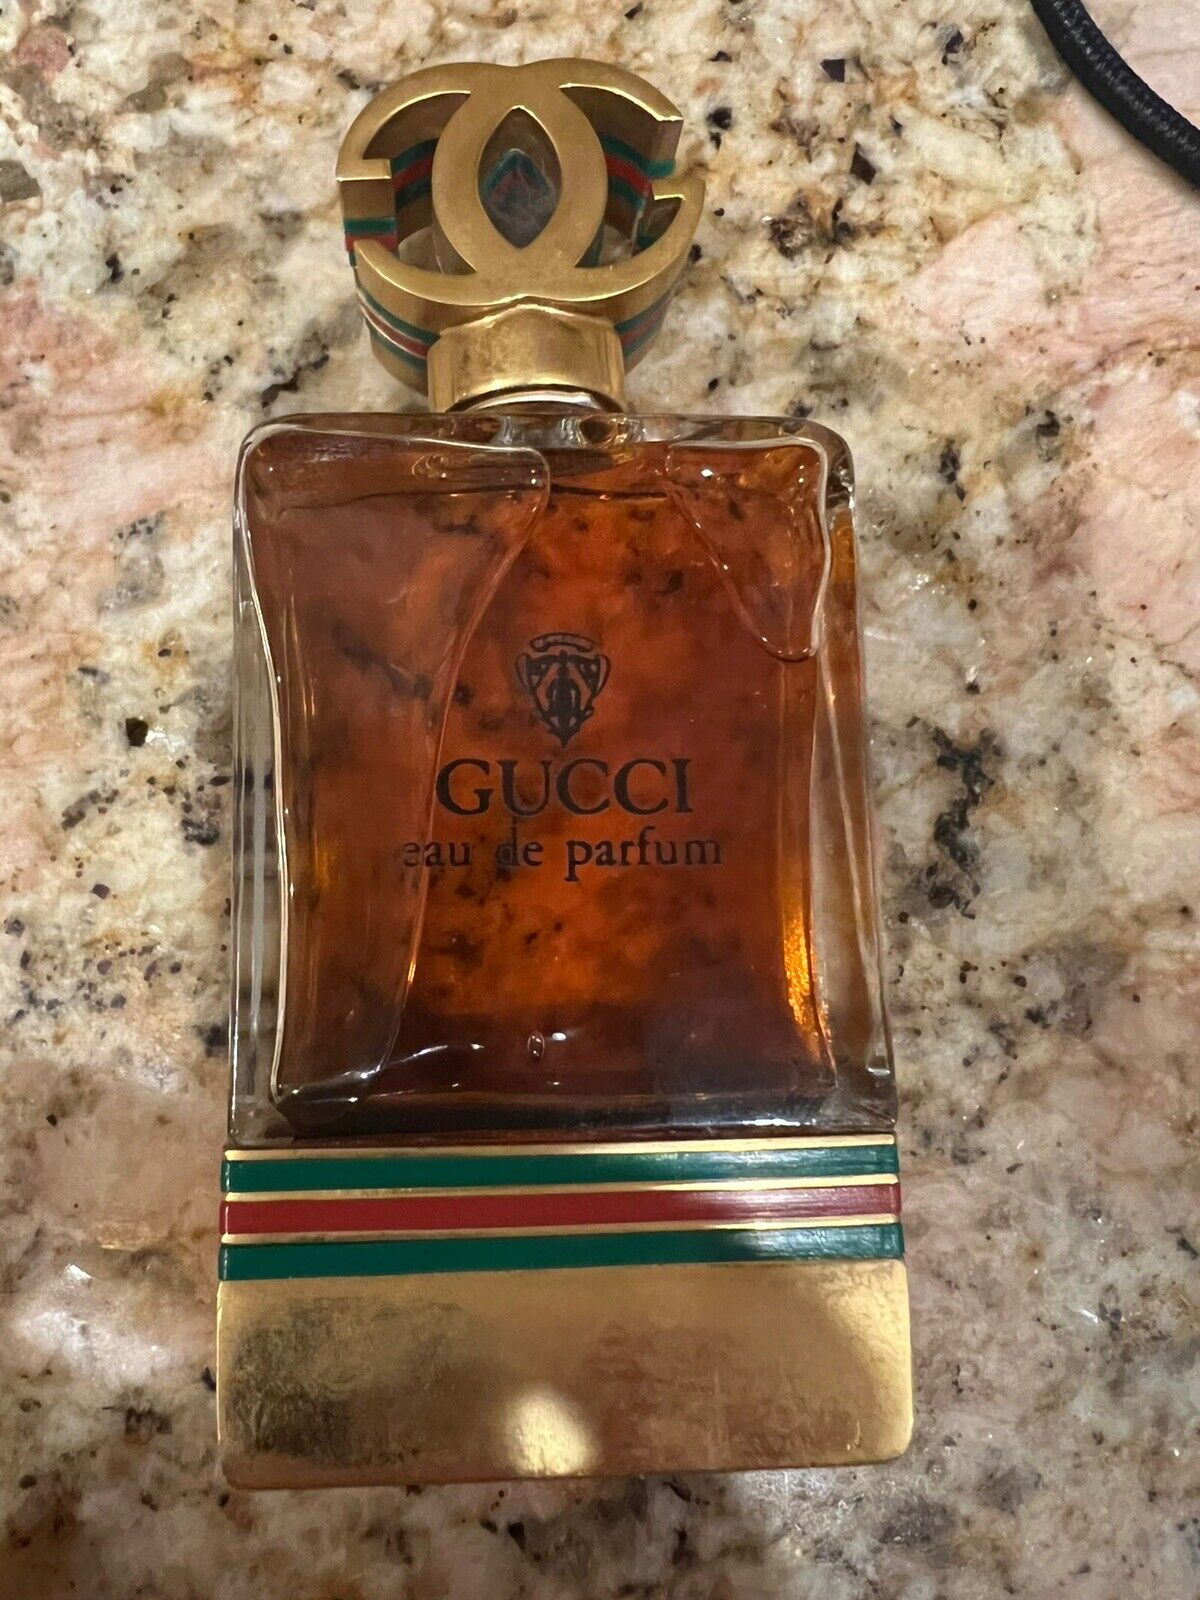 GUCCI Eau De Parfum 1 for Women - 60ml - Vintage -RARE Gorgeous Bottle